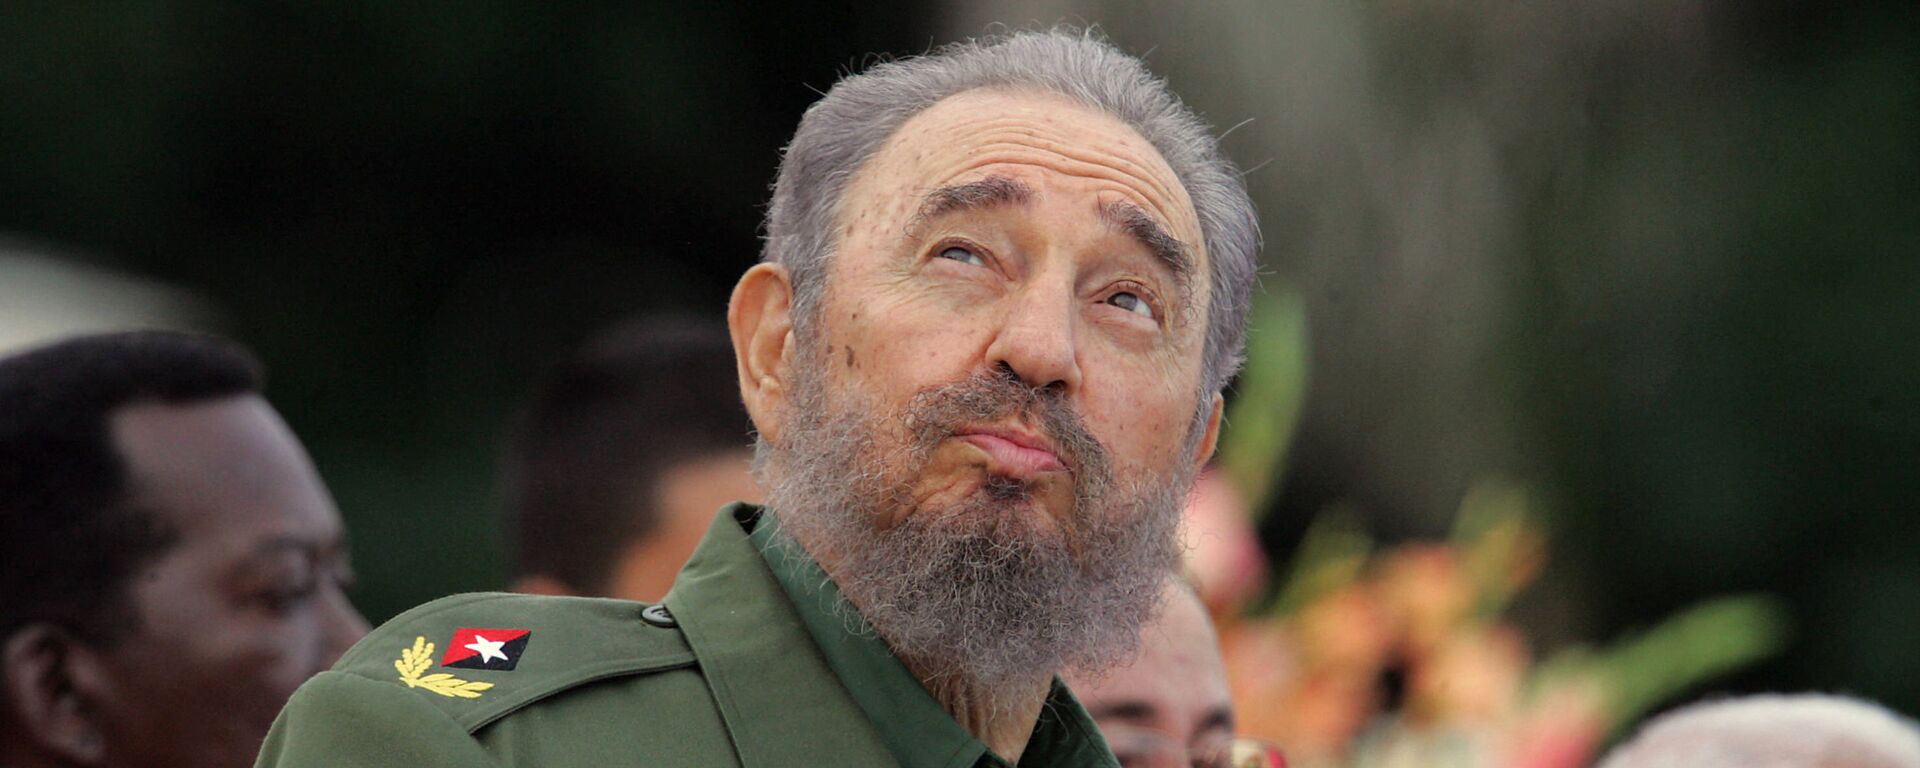 Chủ tịch Cuba Fidel Castro nhìn bầu trời trong thời gian phát biểu ở Bayamo, 2006 - Sputnik Việt Nam, 1920, 25.11.2021